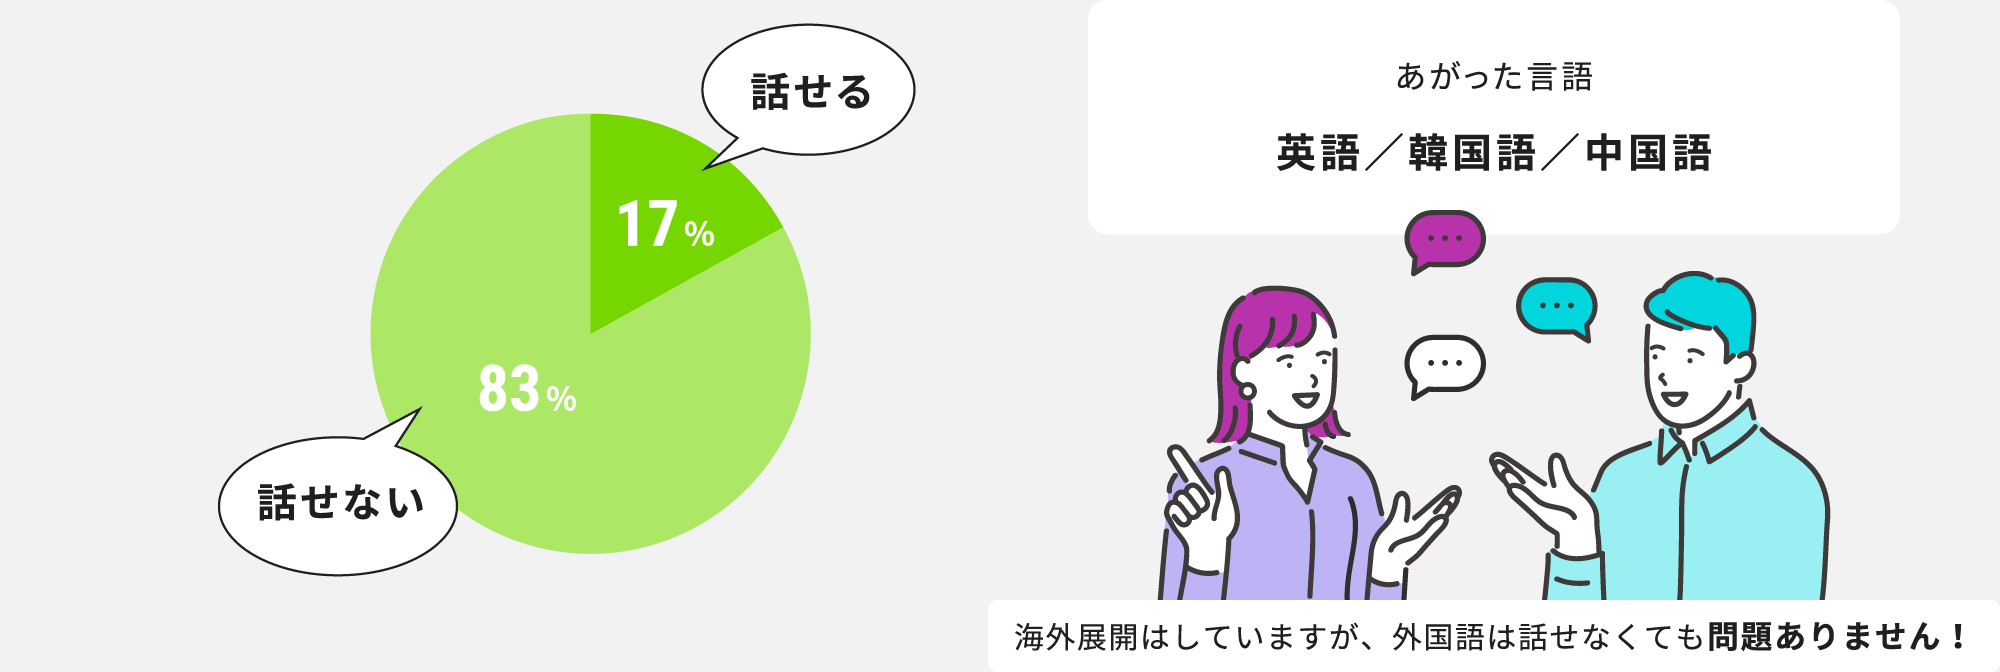 日本語以外で話せる言語があれば教えてください。